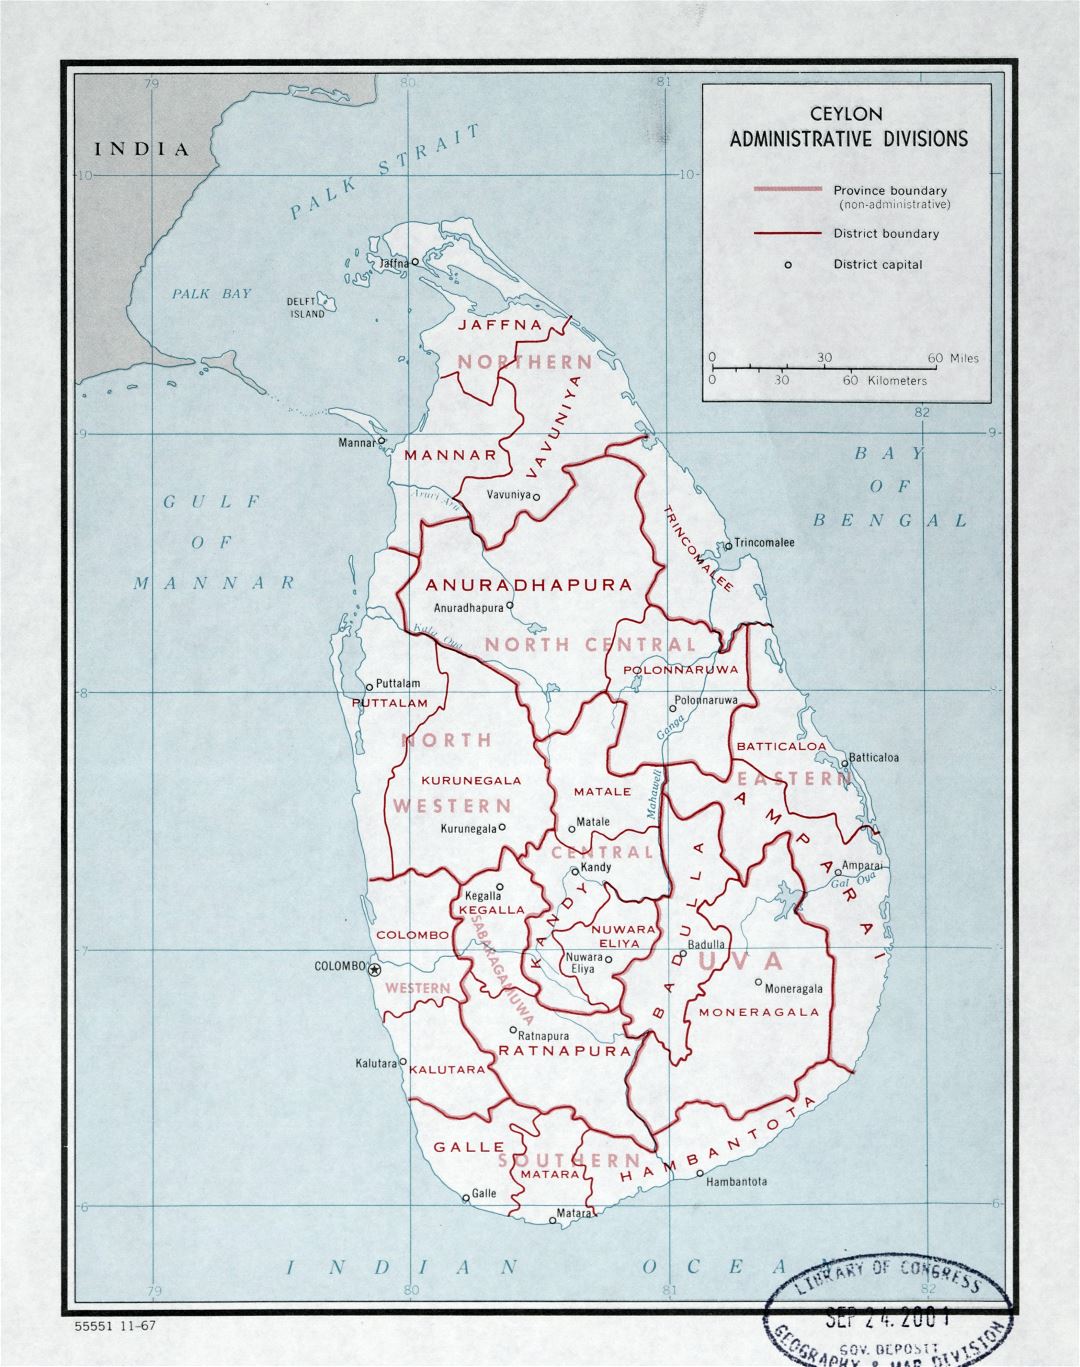 Grande detallado mapa de administrativas divisiones de Sri Lanka (Ceilán) - 1967